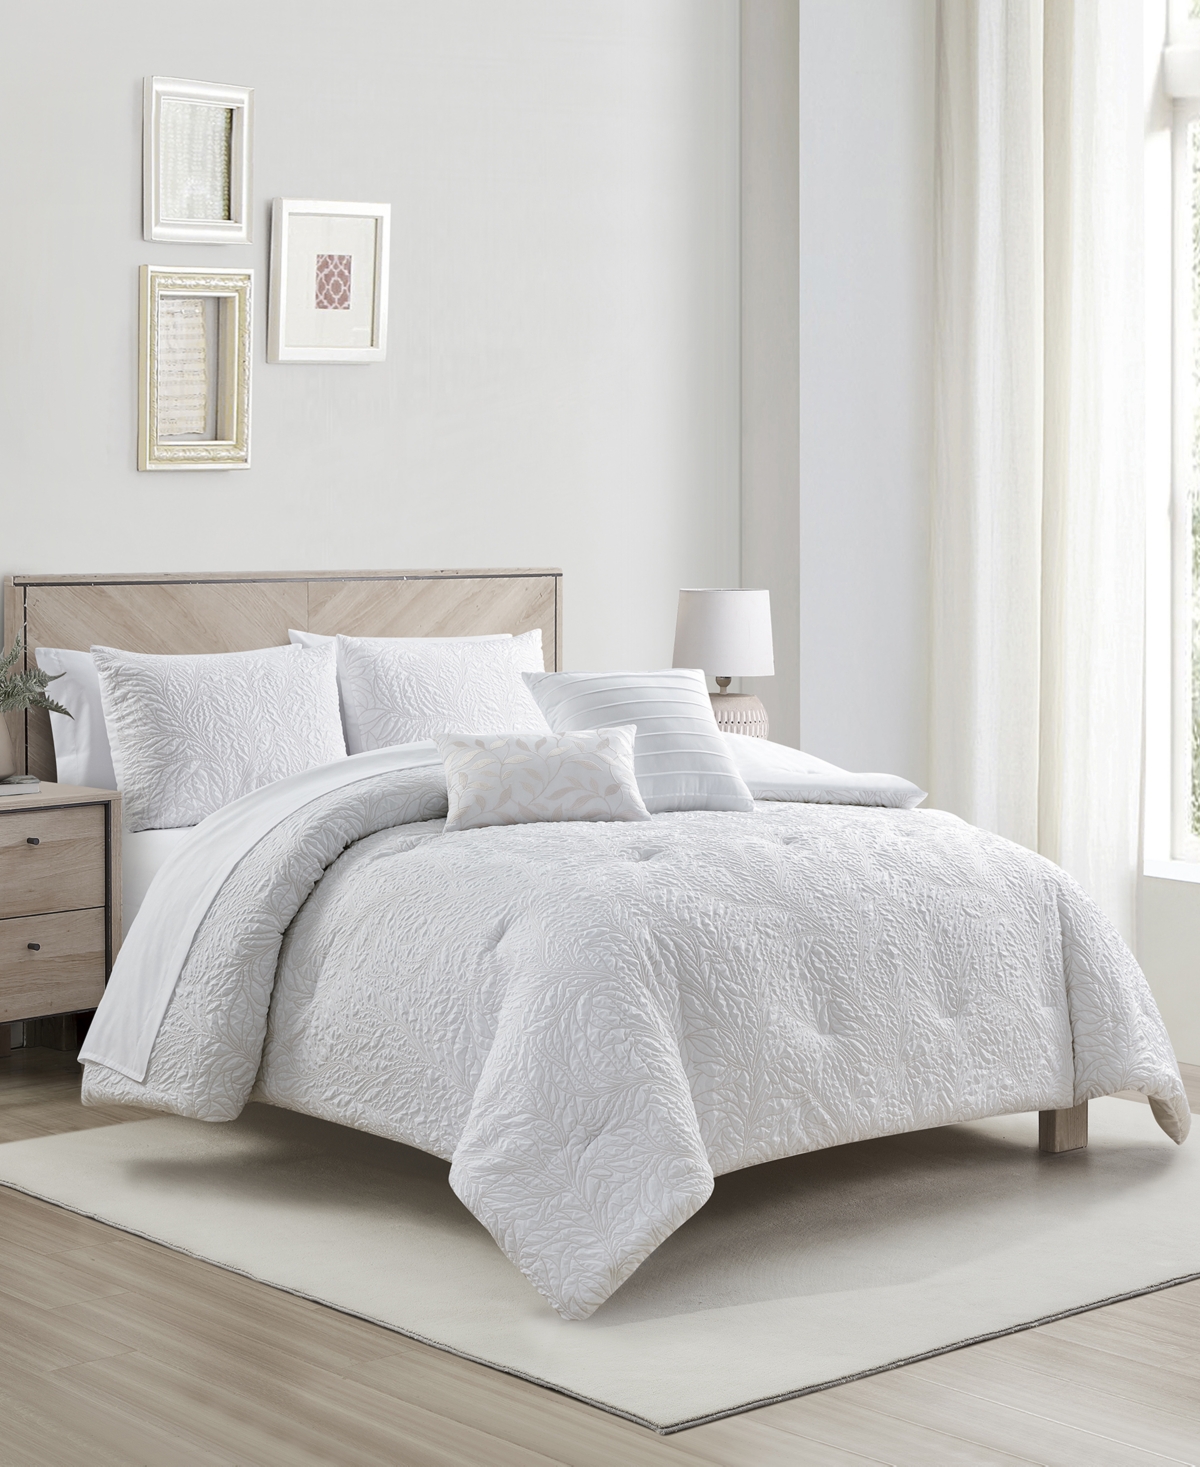 Shop Sunham Vine 9-pc. Comforter Set, California King, Created For Macy's In White